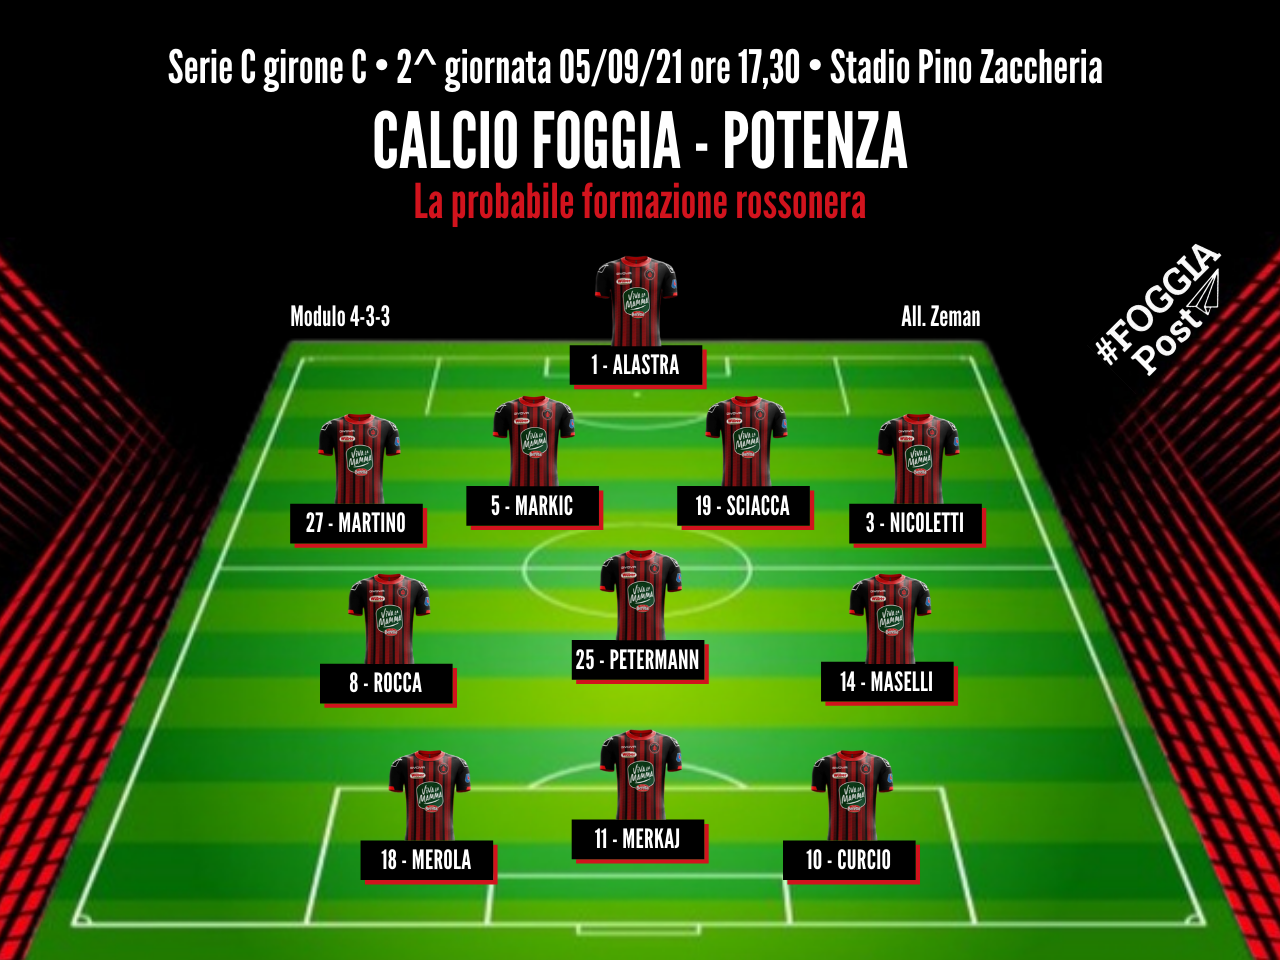 Foggia-Potenza, la squadra di Zeman sta bene e in attacco incognita Di Grazia.